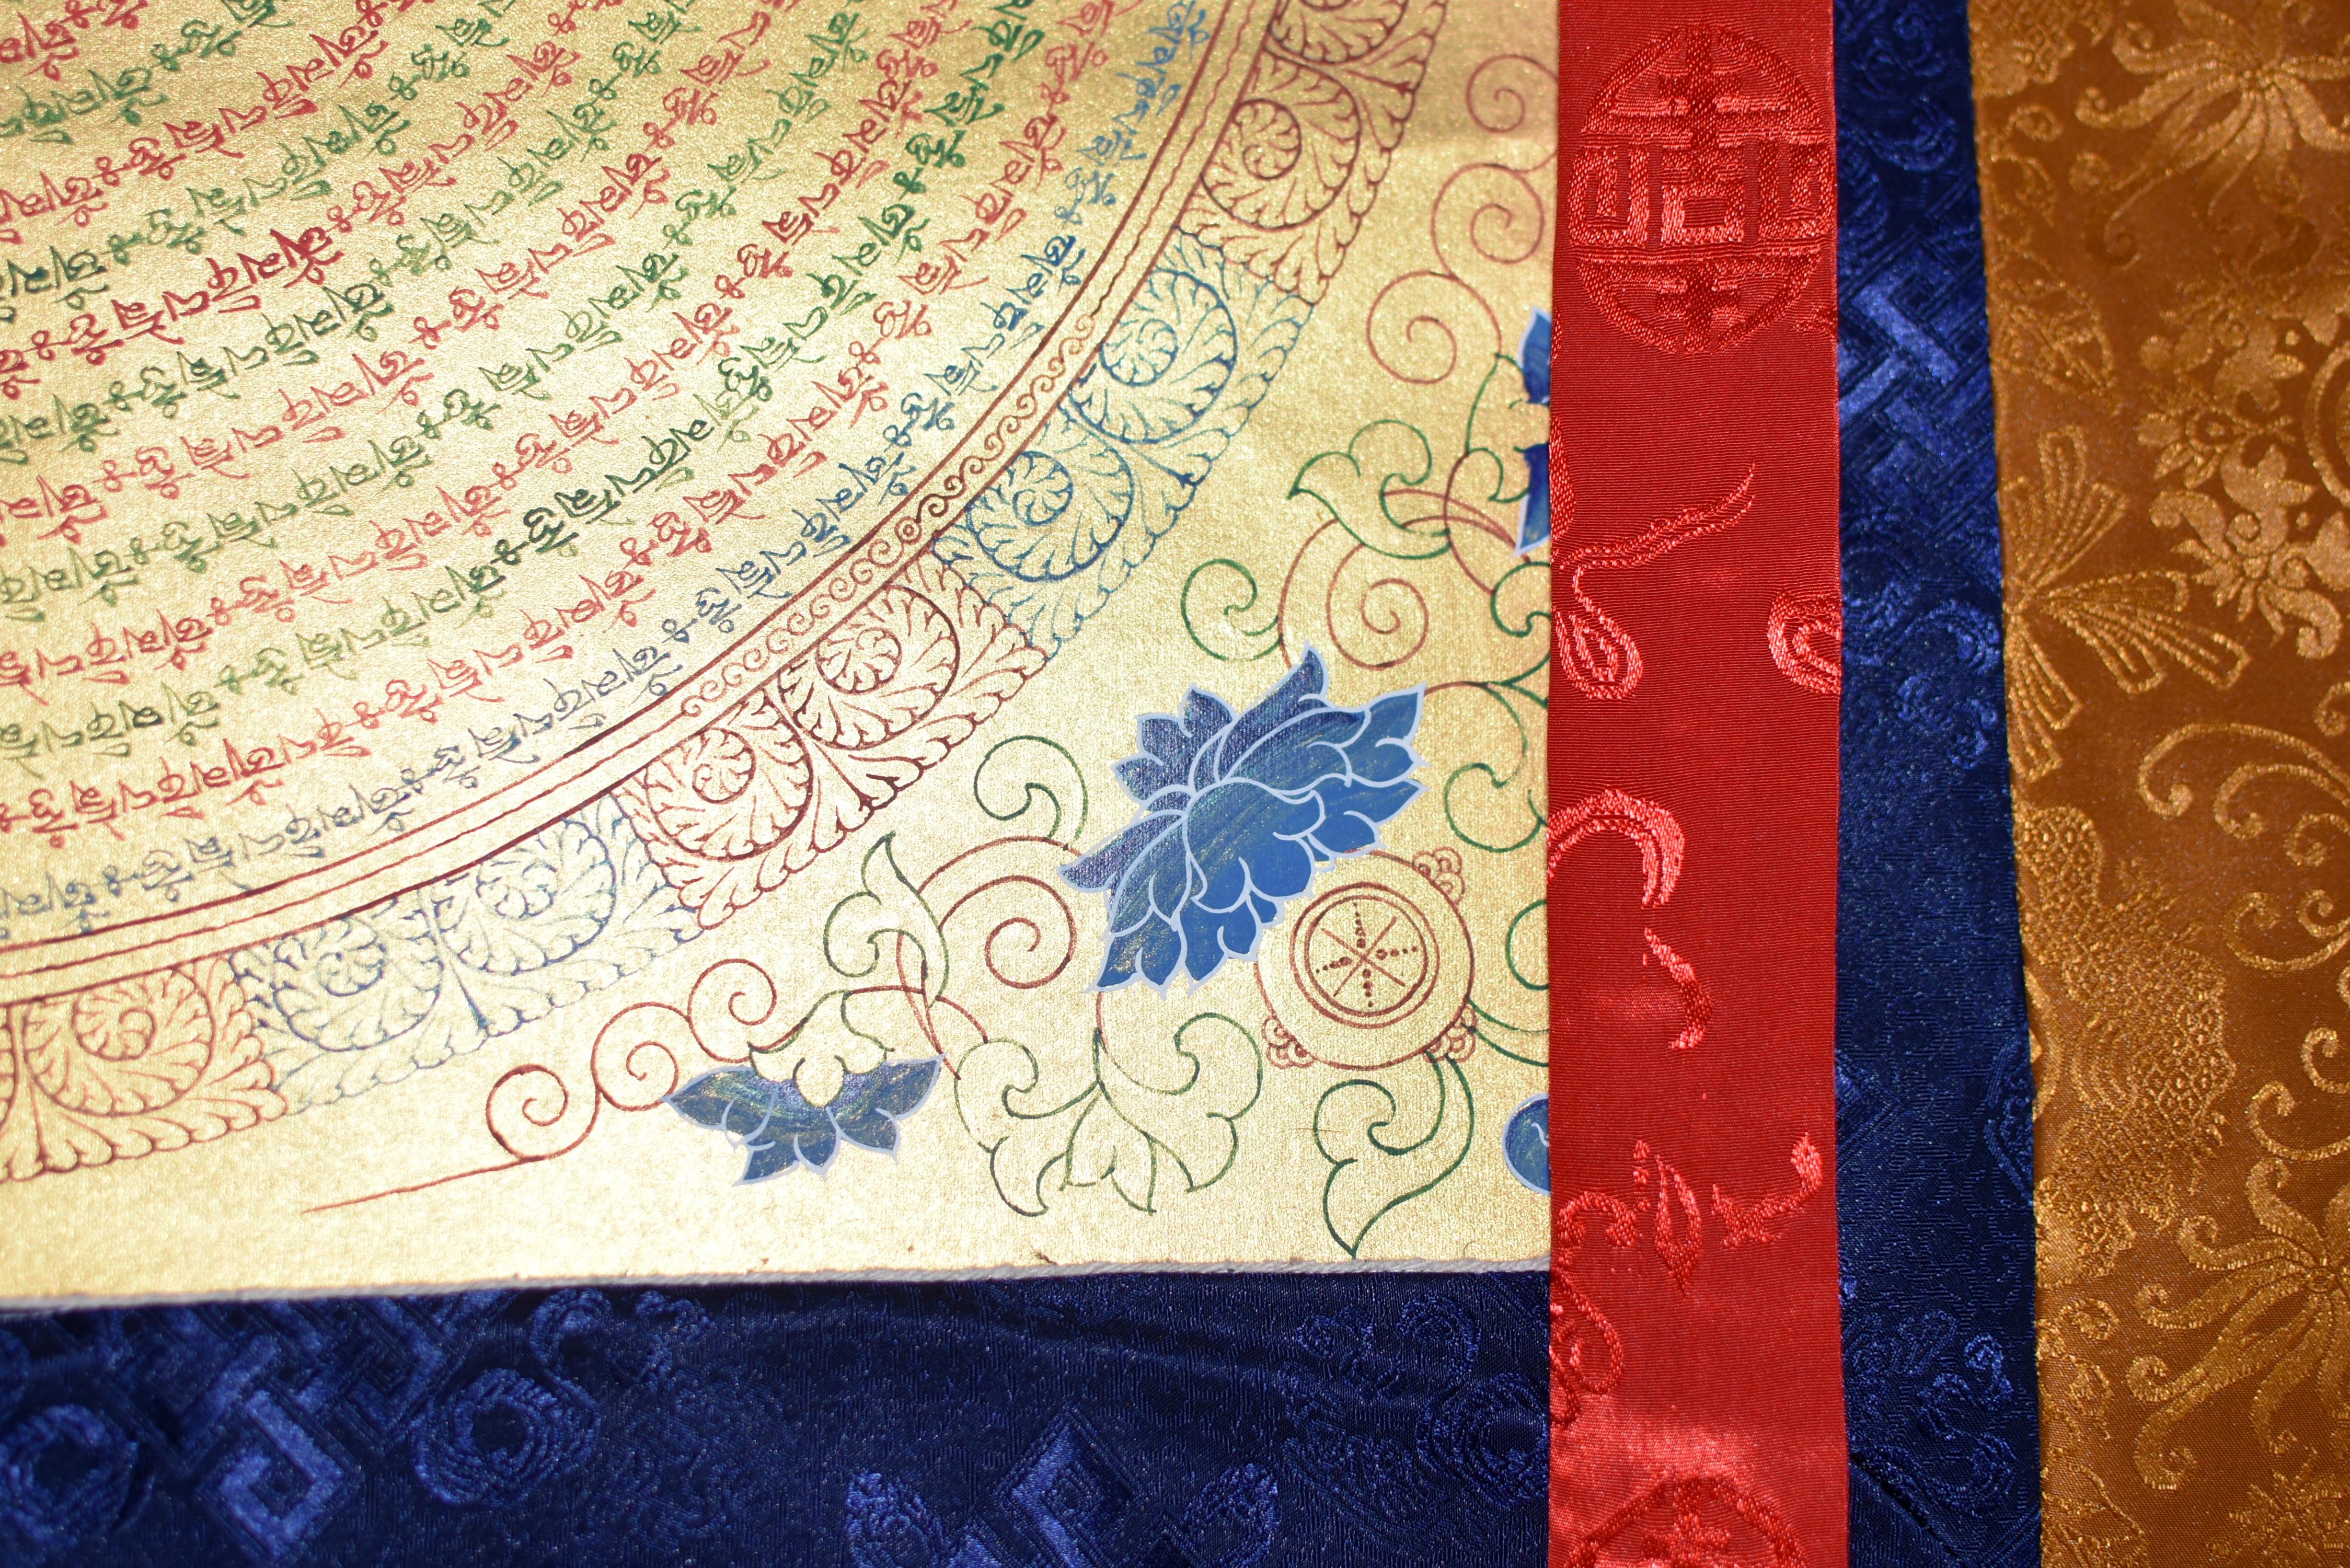 Tibetan Painting Thangka Sanskrit Mandala Mantra Hand Painted Gilded For Sale 2